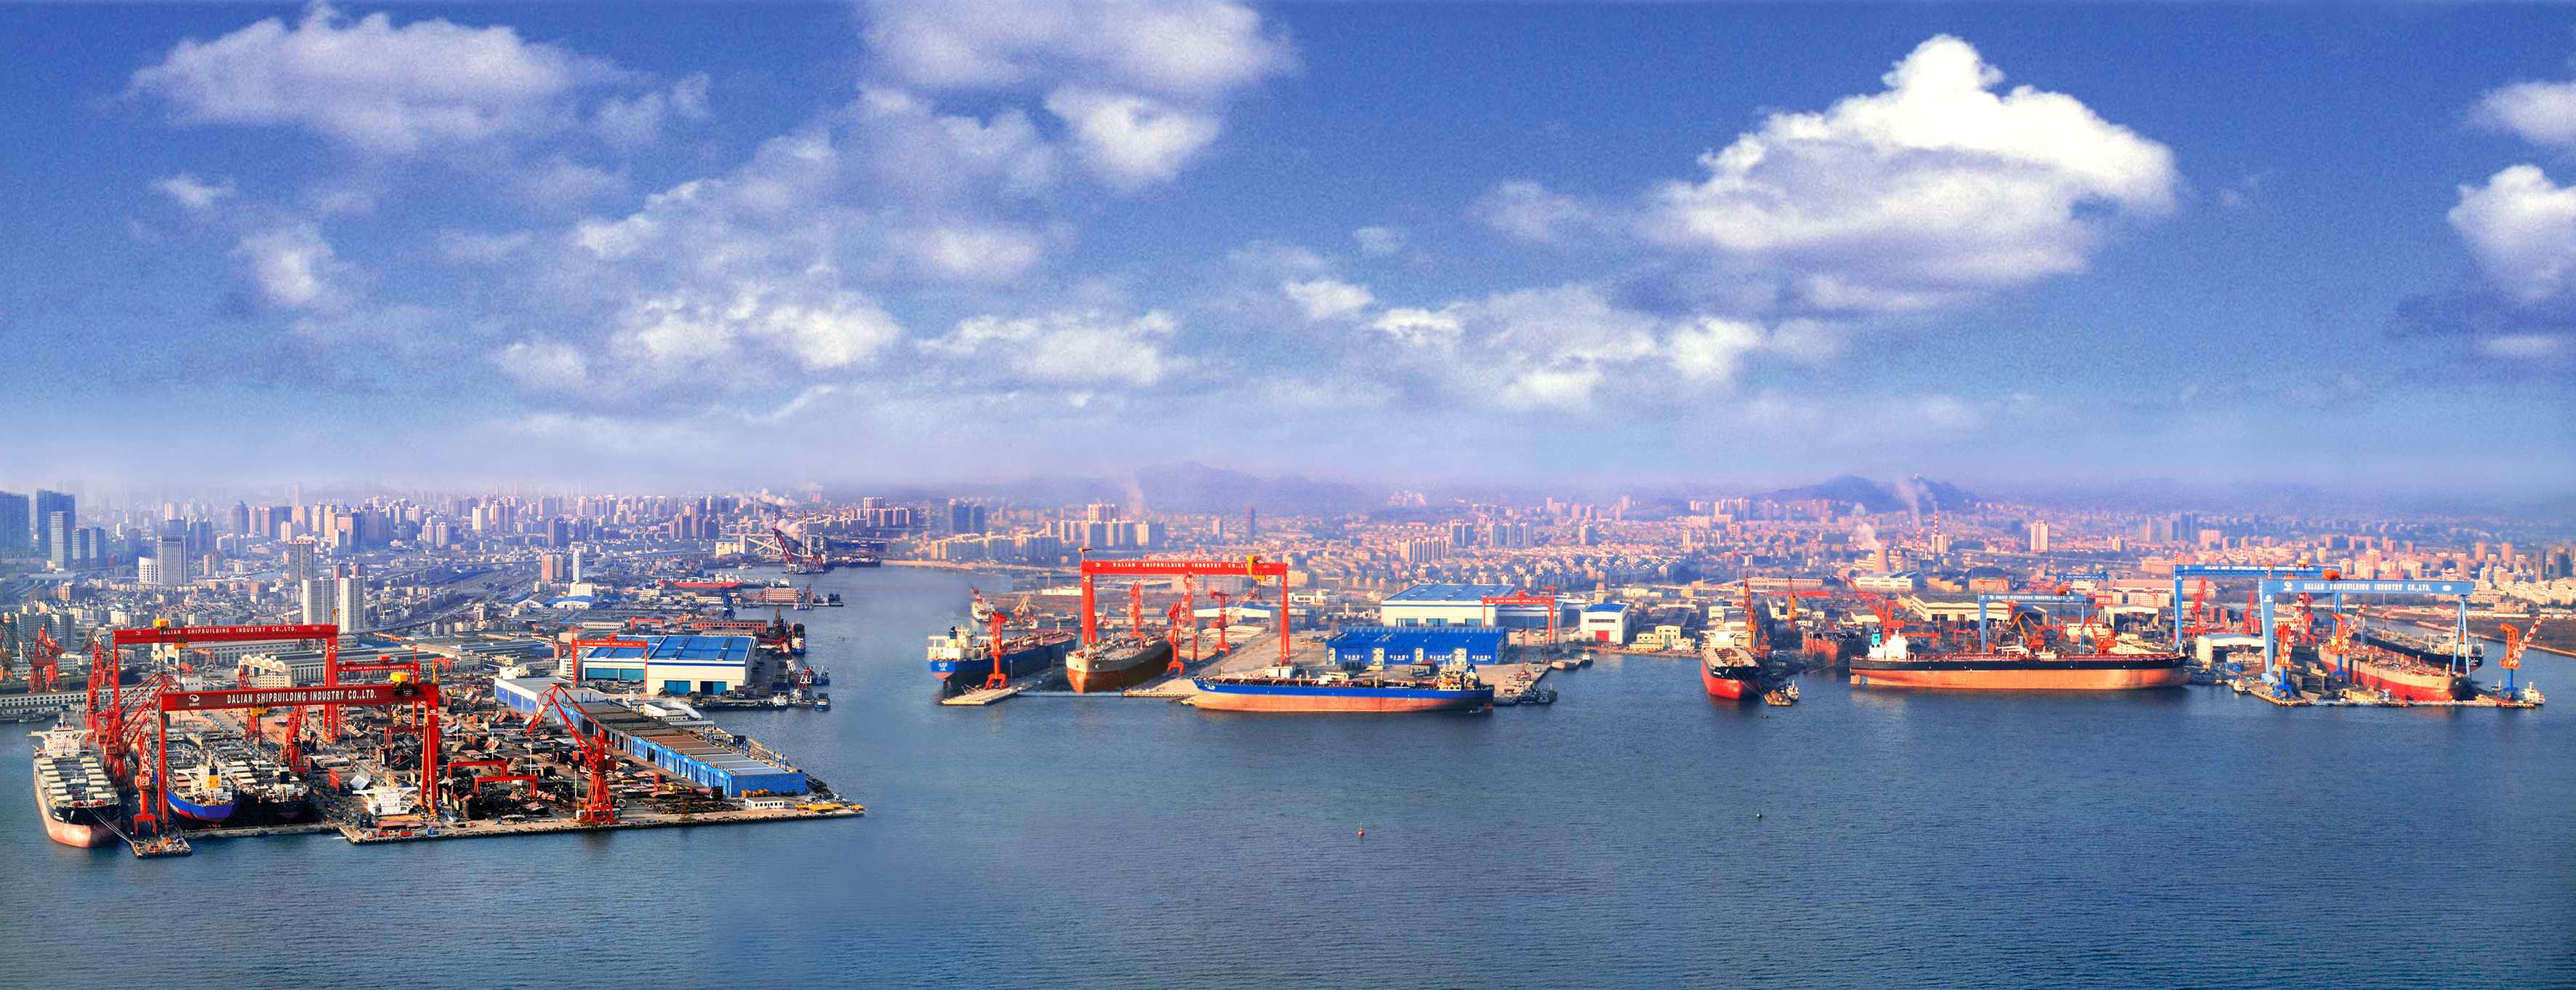 Dalian Shipyard (CSSC)